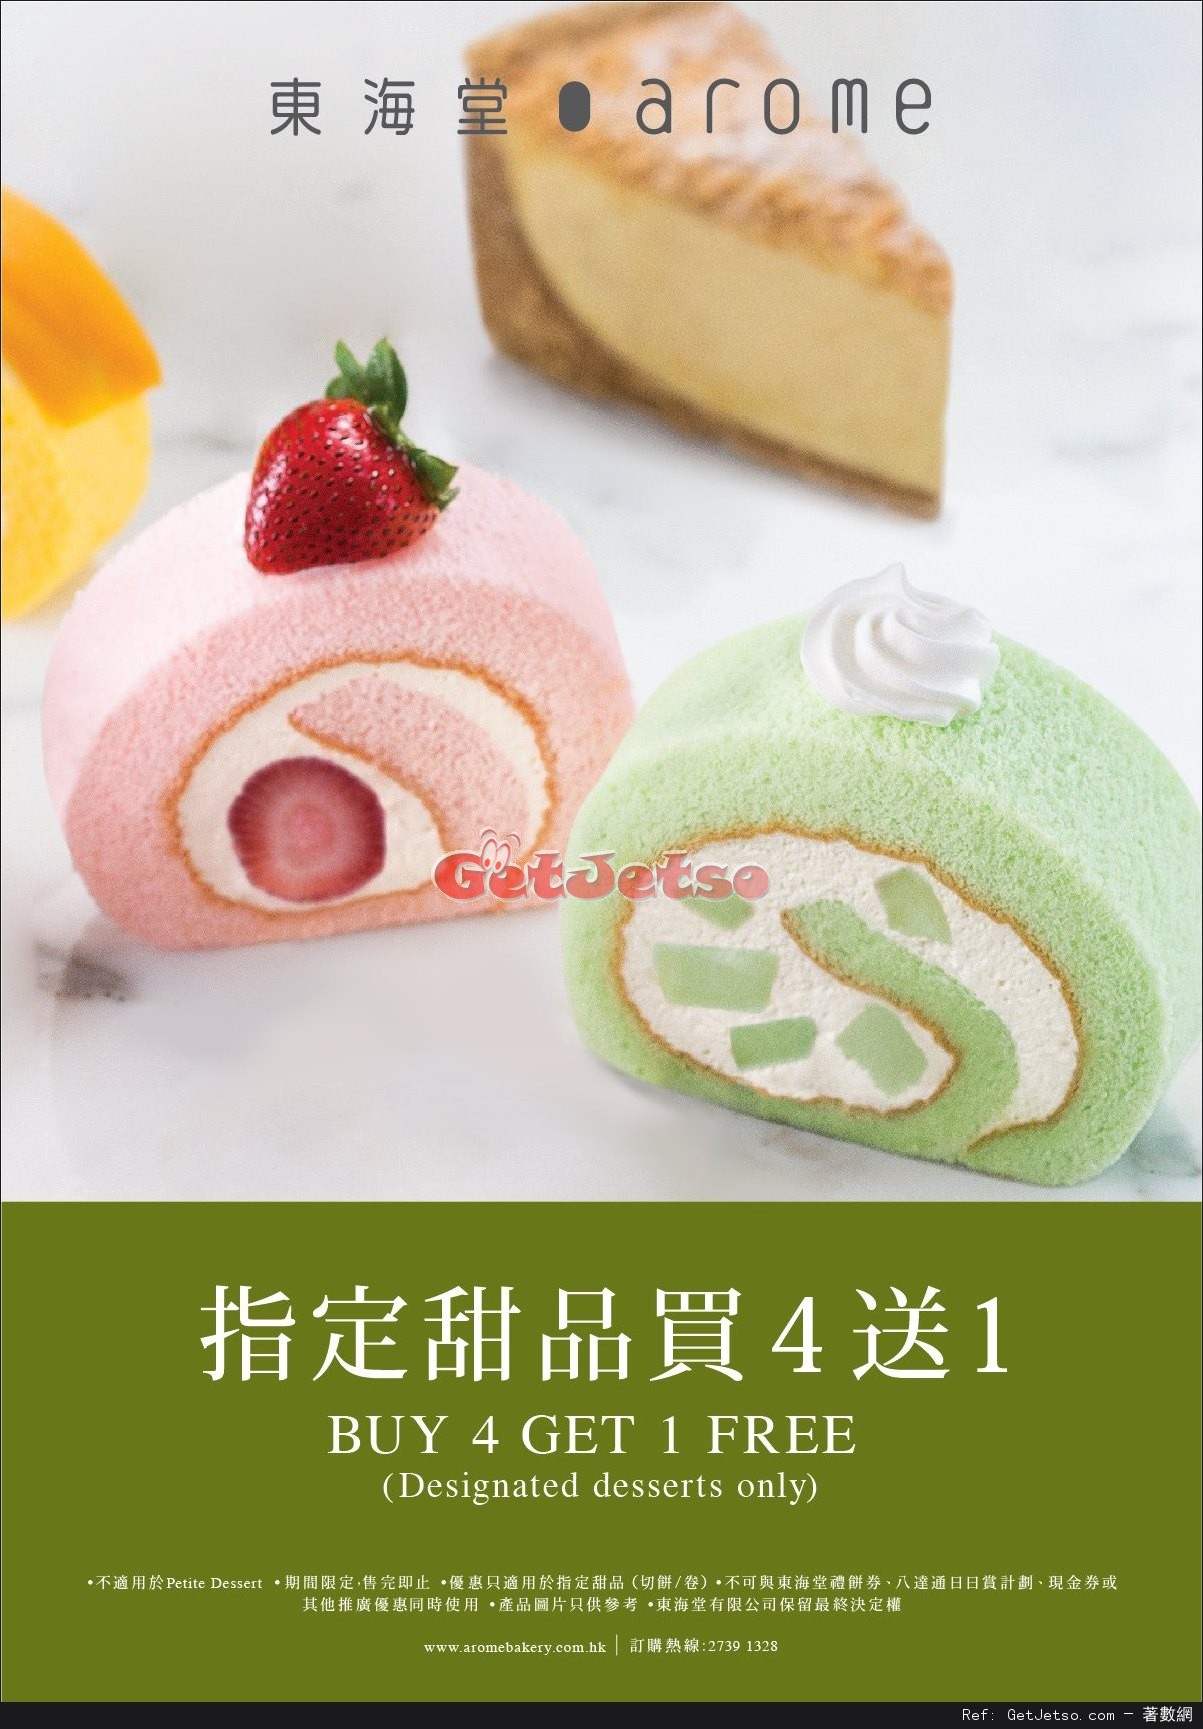 東海堂甜品買4 送1優惠(至17年4月30日)圖片1